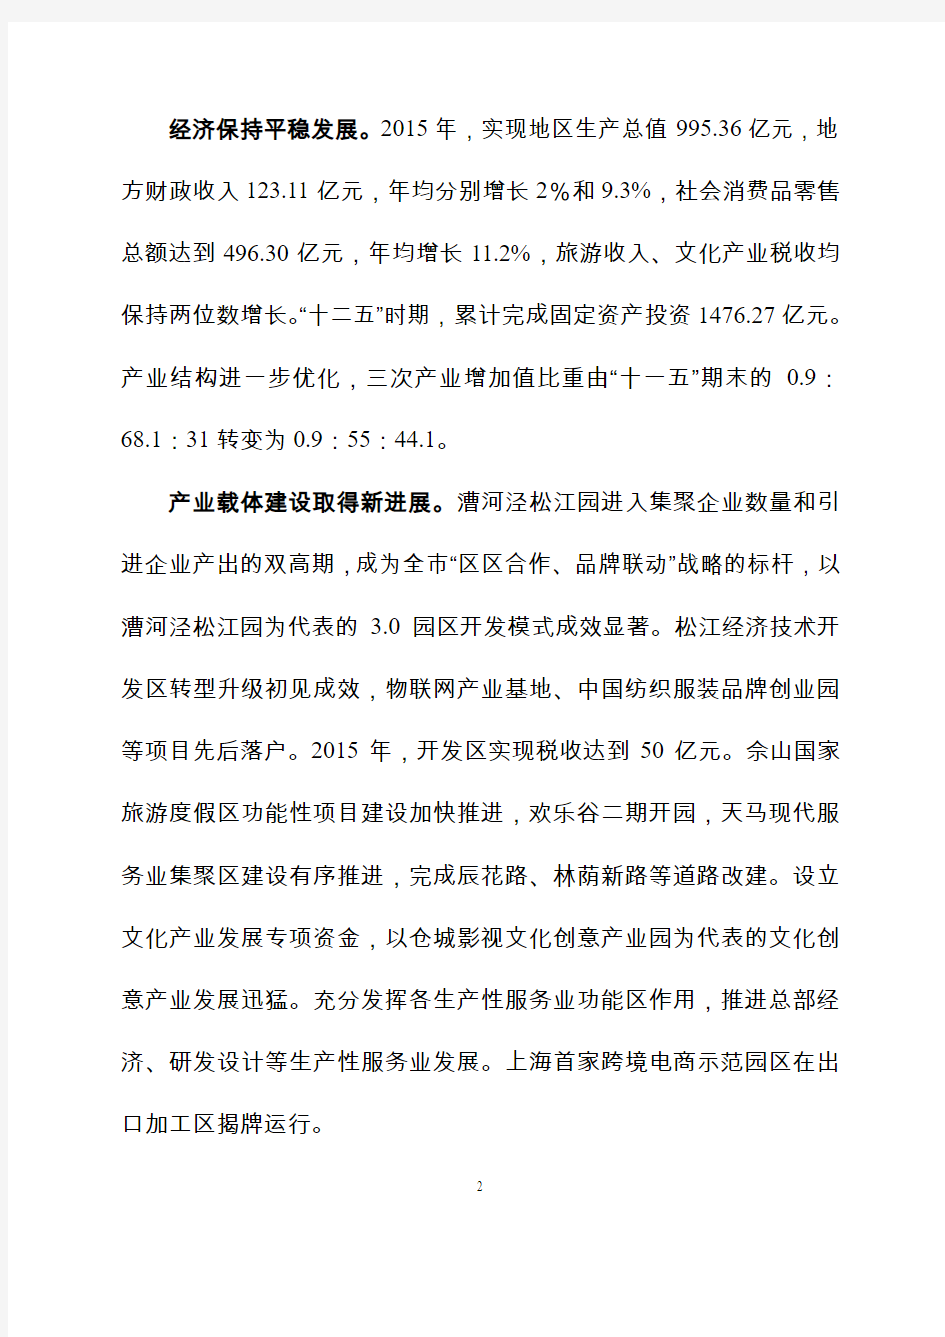 上海市松江区国民经济和社会发展第十三个五年规划纲要